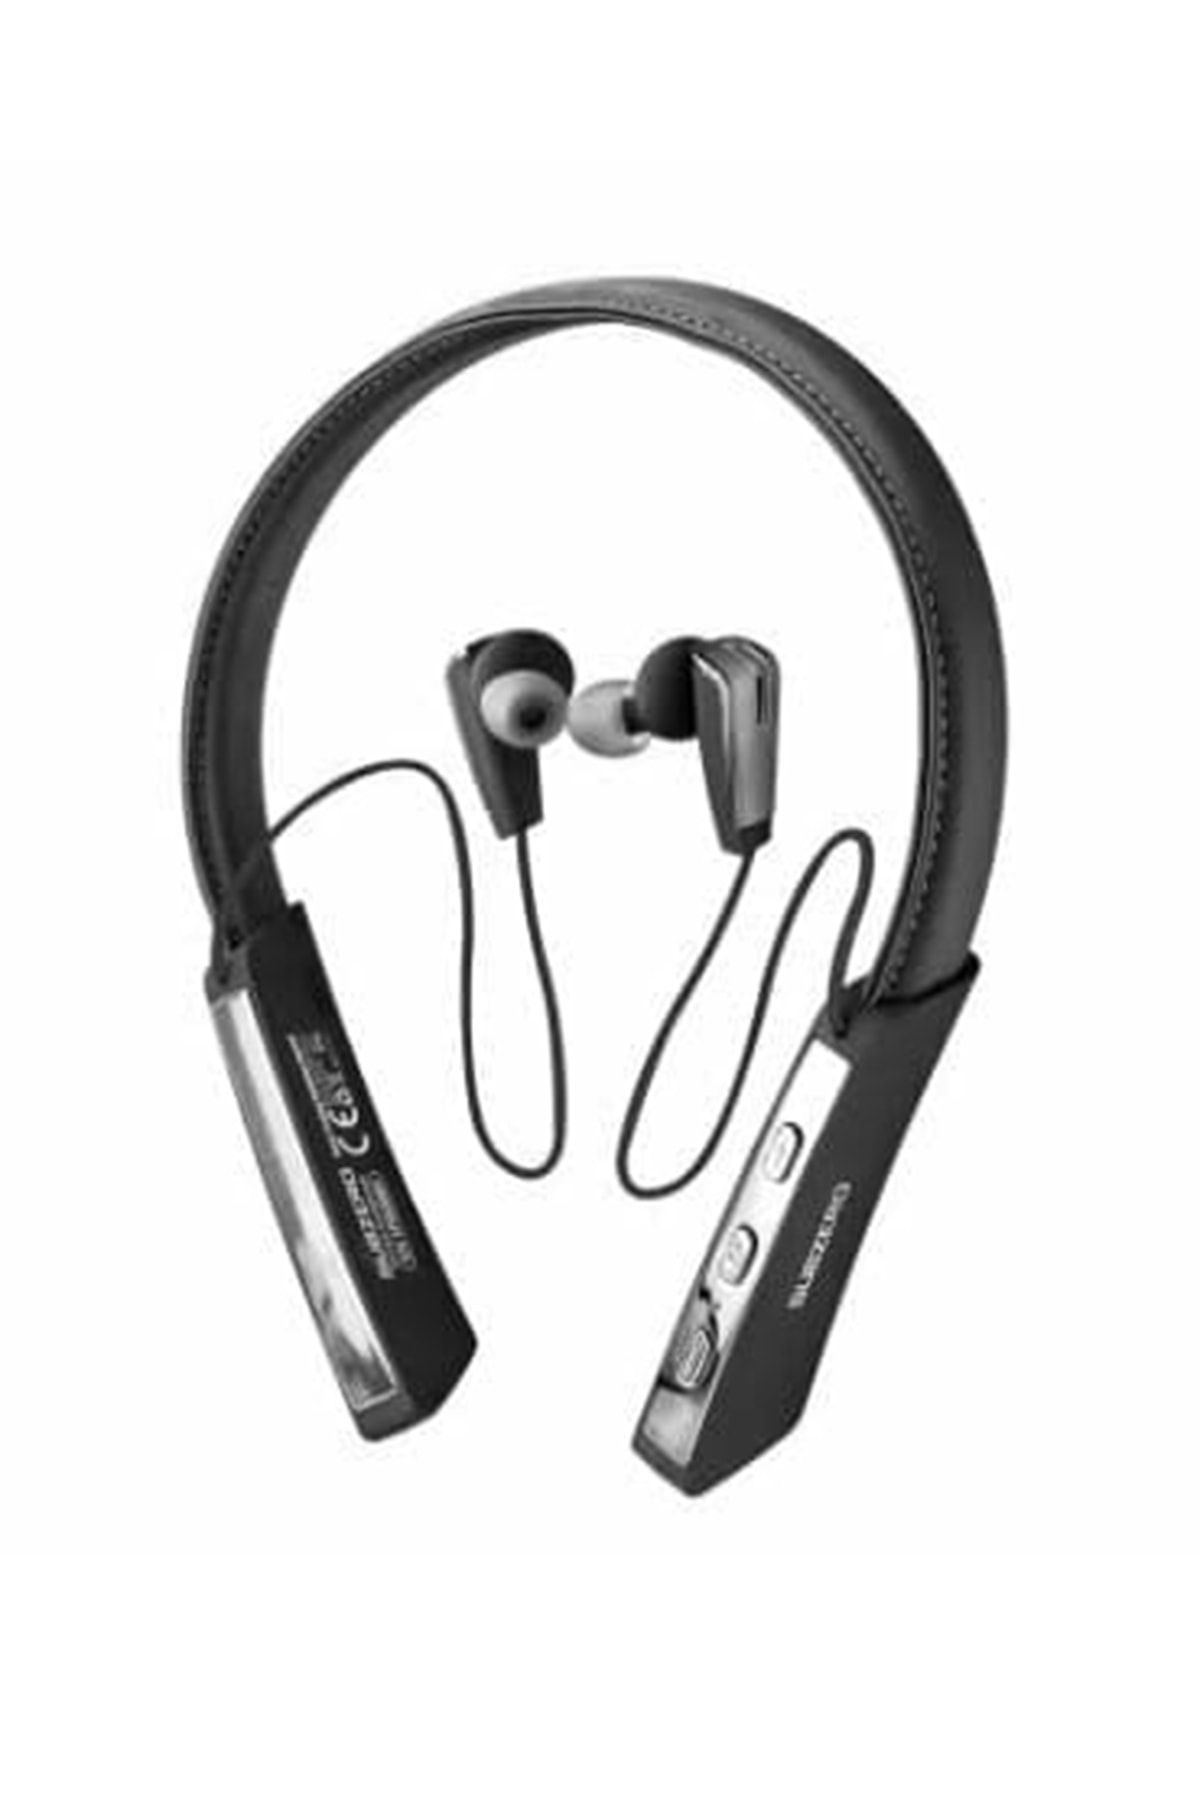 Subzero Kablosuz Bluetooth Kulaklık Wıreless Stereo - Boyun Askılı Deri Sporcu Kulaklığı Super Bass 50 Saat